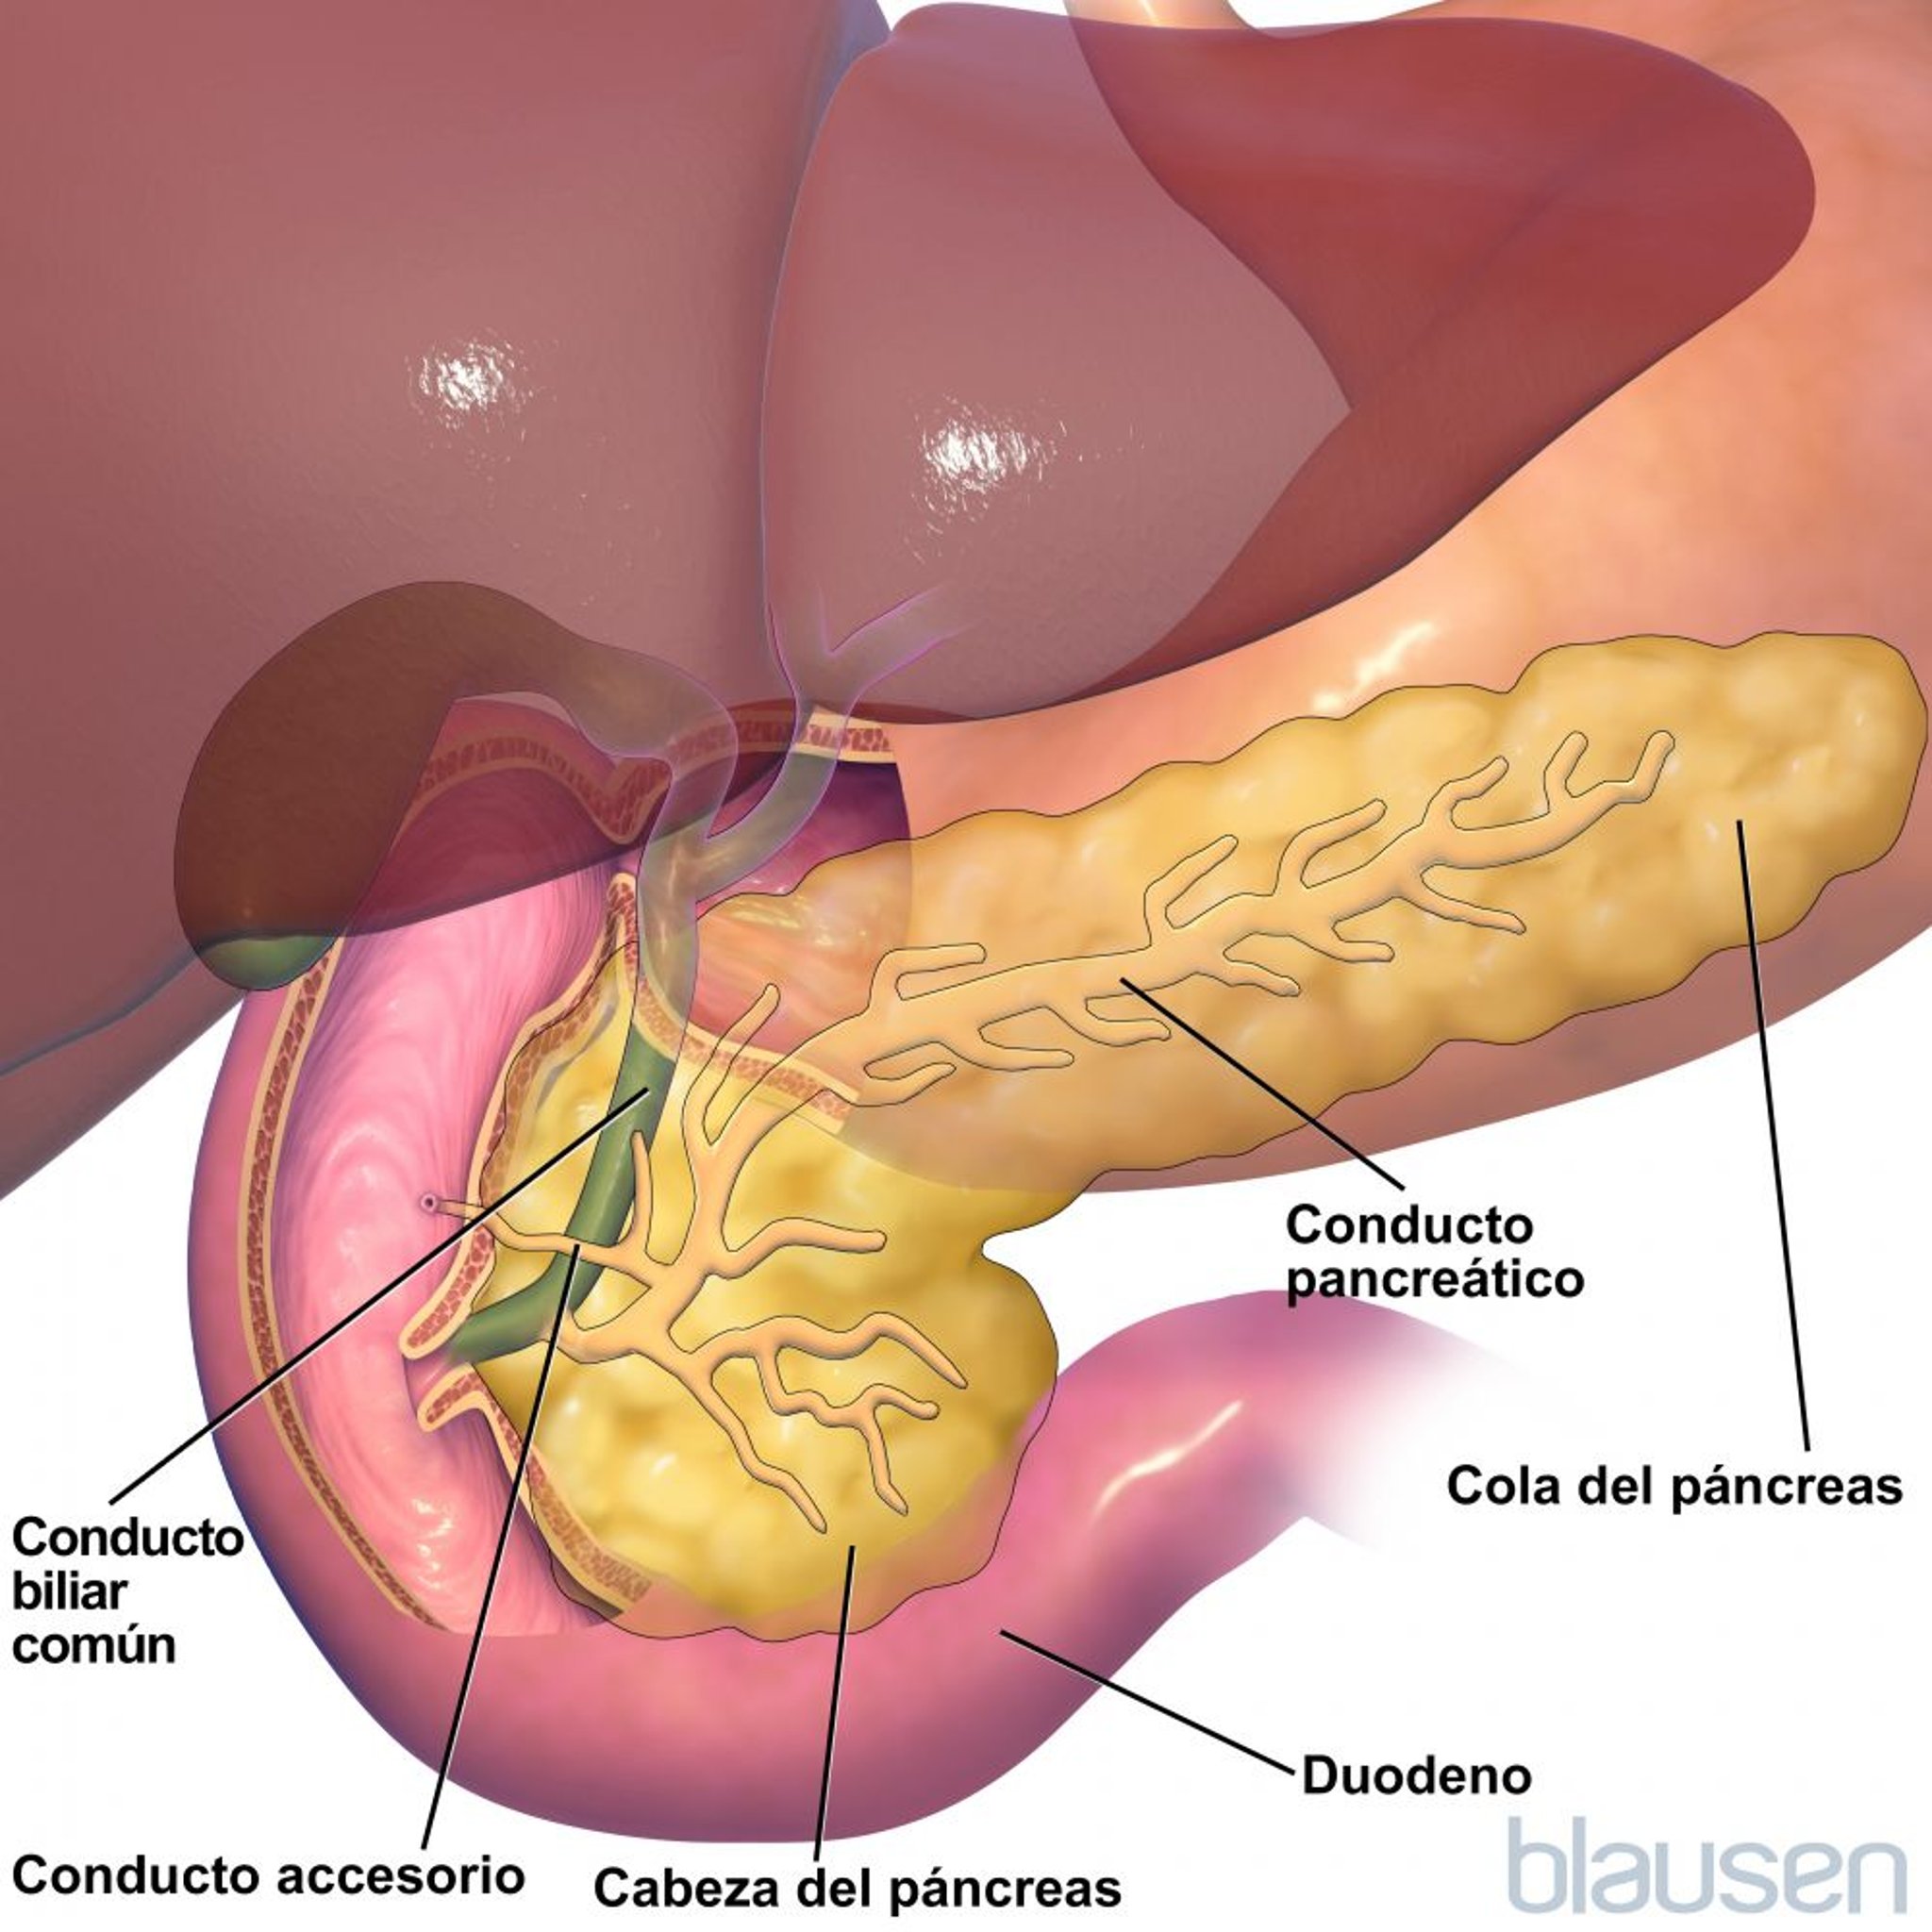 Anatomía del pancreas